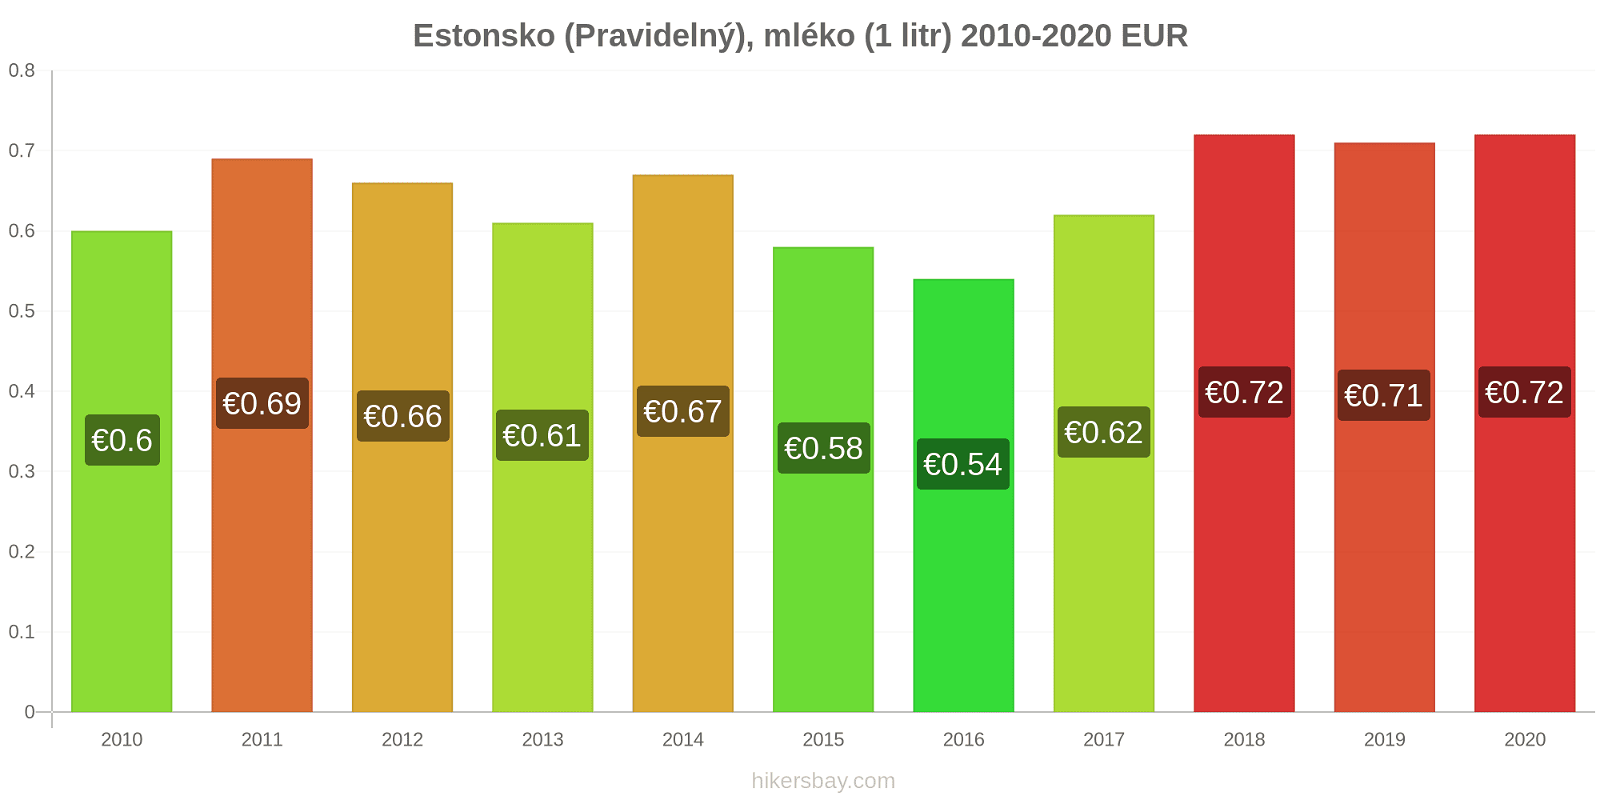 Estonsko změny cen (Pravidelný), mléko (1 litr) hikersbay.com